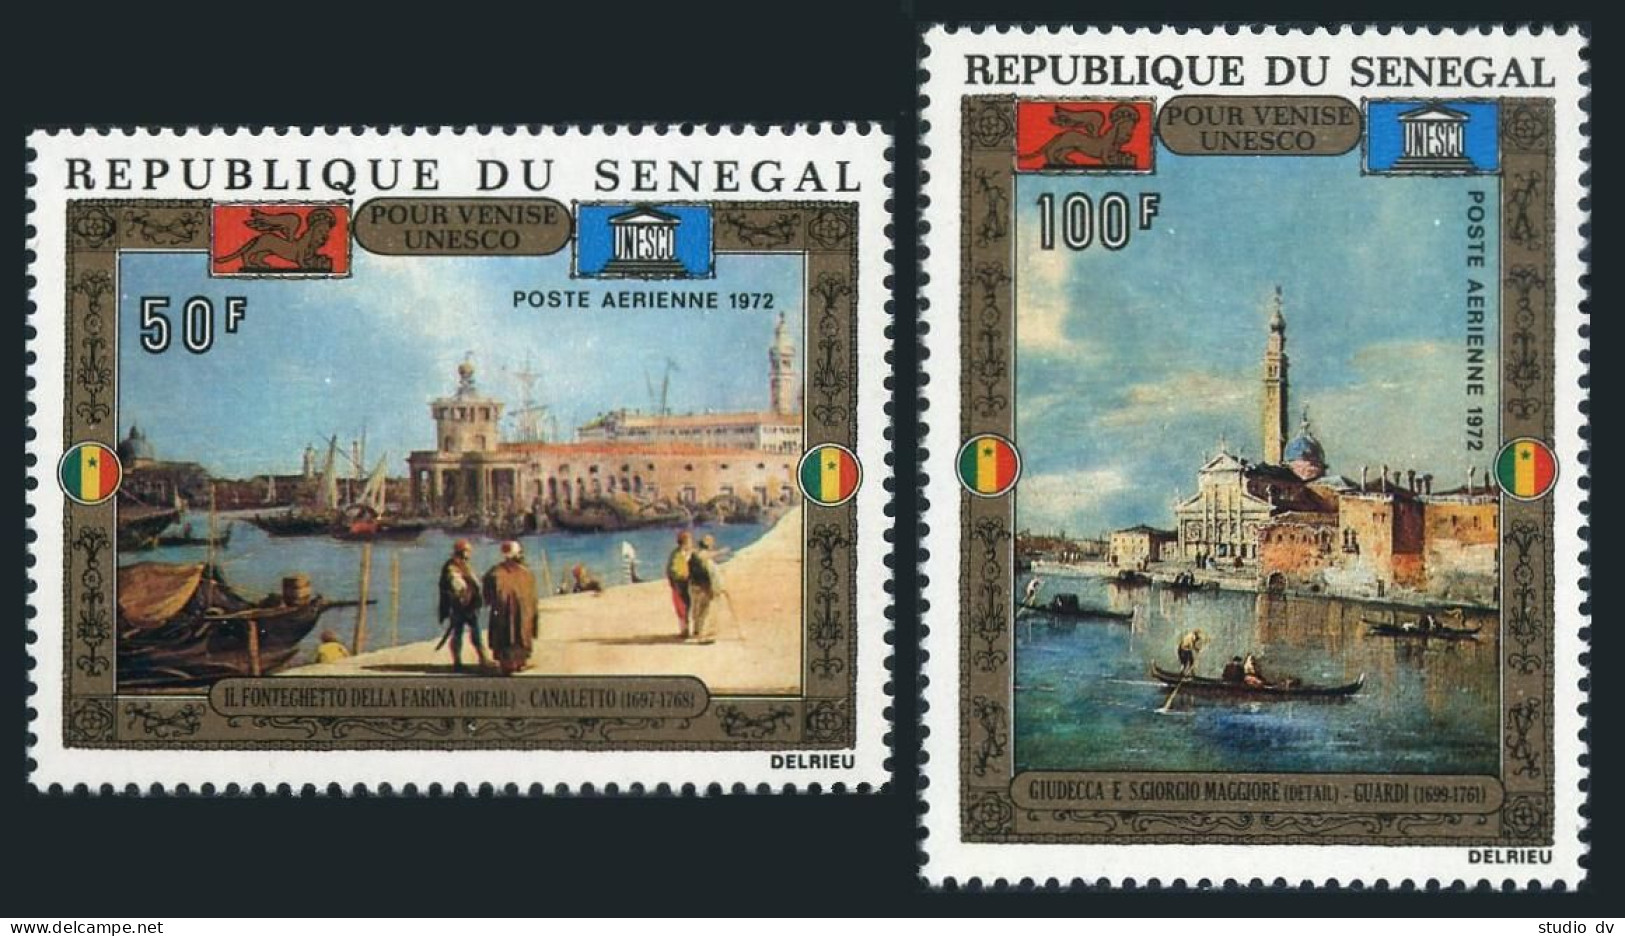 Senegal C110-C111, MNH. Mi 482-483. UNESCO Campaign To Save Venice, 1972. Guardi - Sénégal (1960-...)